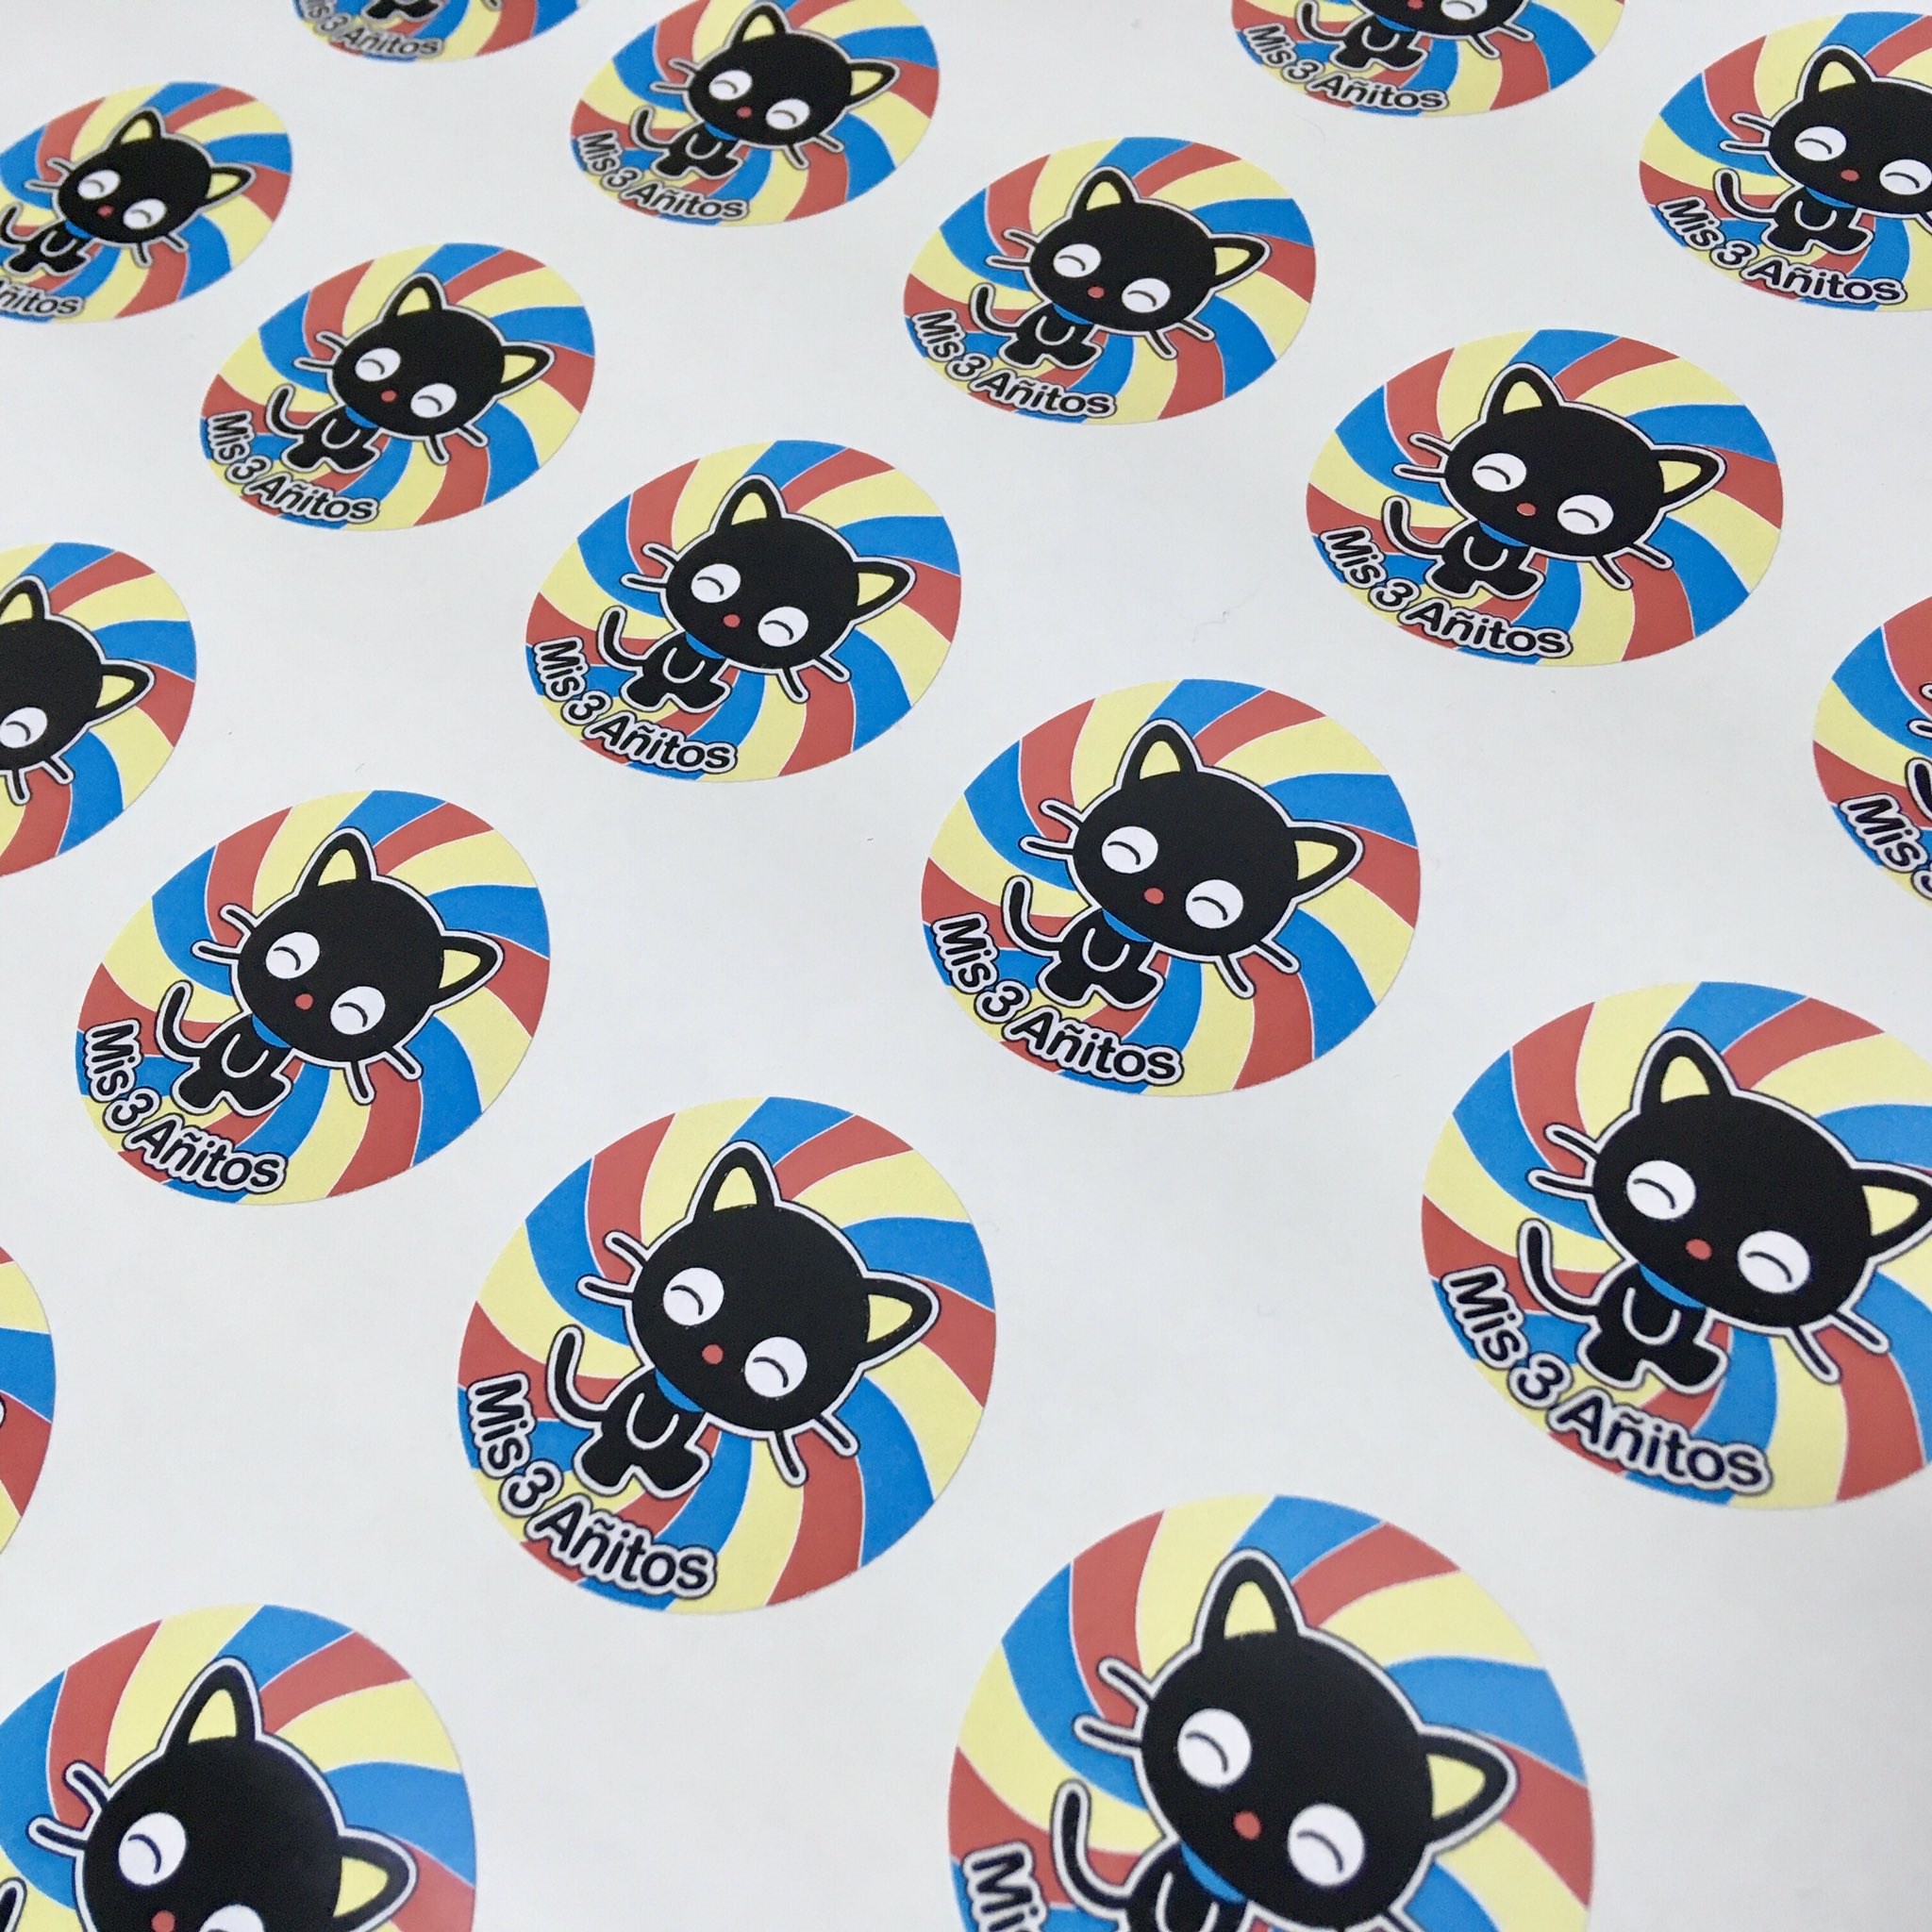 TeLaHagoComoQuieras on X: Chococat. Stickers impresos full color en papel  ilustración, autoadhesivos y troquelados. De 40 mm. de Ø (diámetro).  #stickersimpresos #stickers #chococat #impresos #fullcolor #papel  #ilustracion #autoadhesivos #troquelados